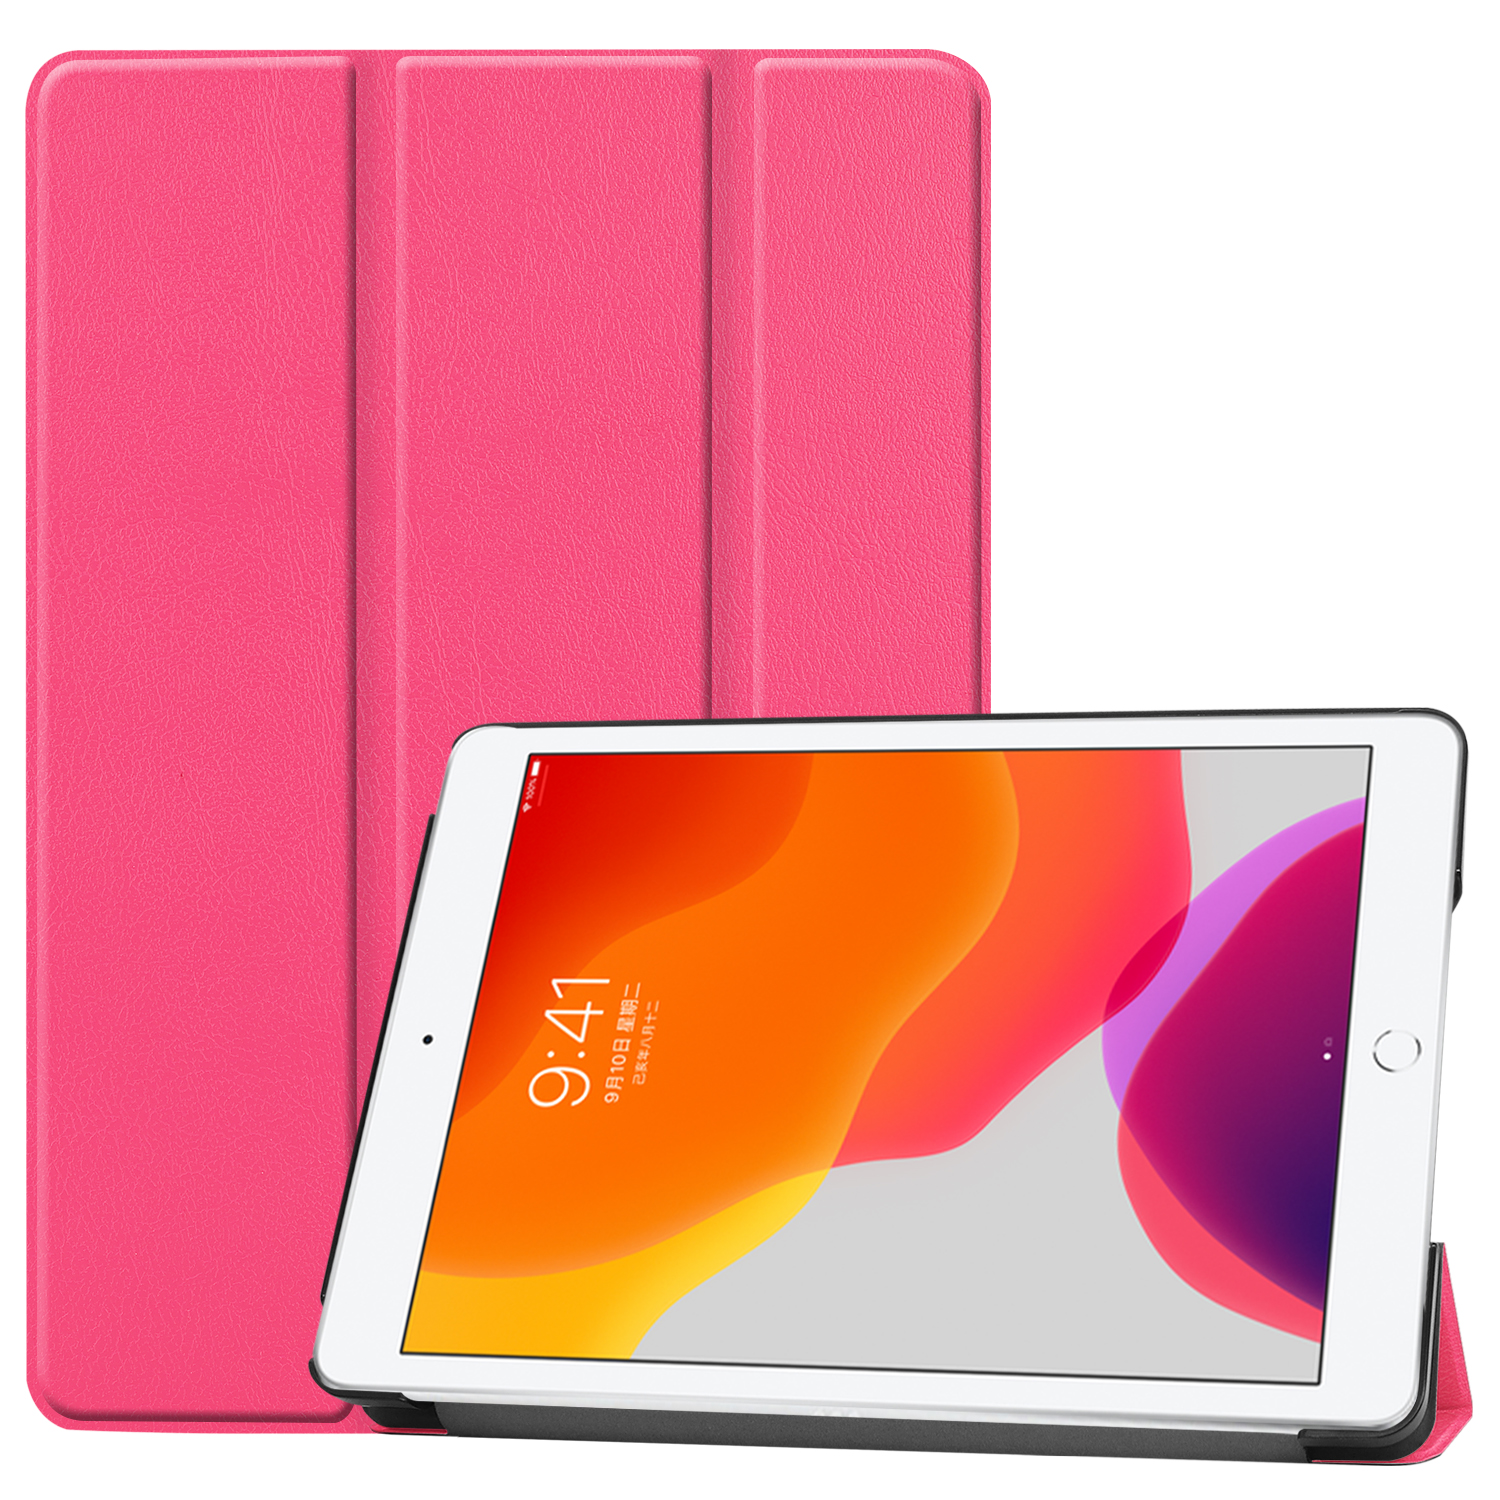 LOBWERK Hülle Schutzhülle Bookcover iPad Zoll für 2019/2020/2021 Pink Kunstleder, 10.2 Apple